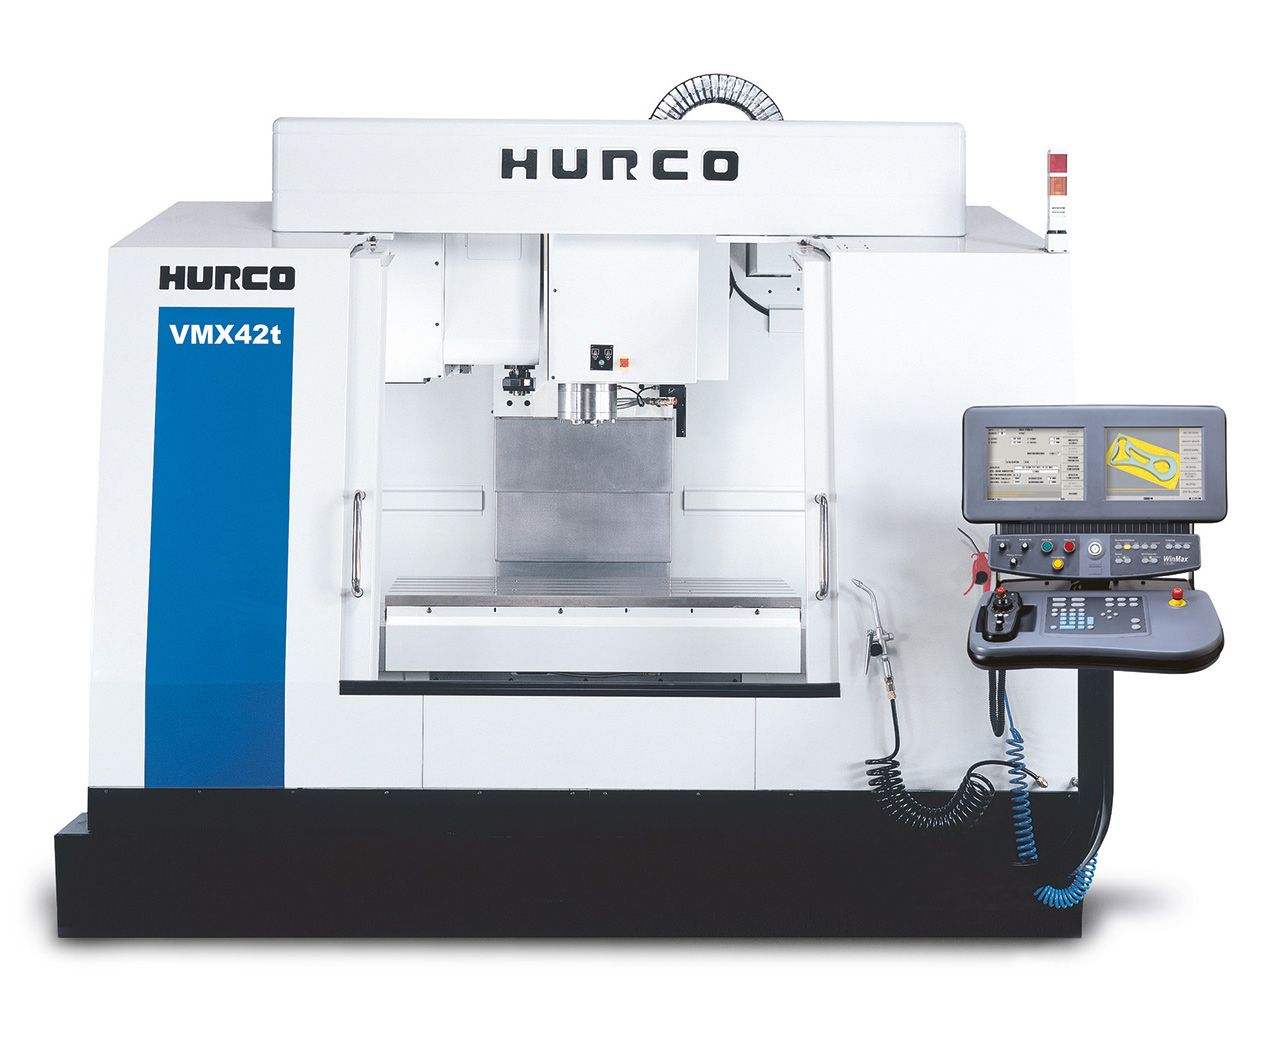 HURCO VMX42t